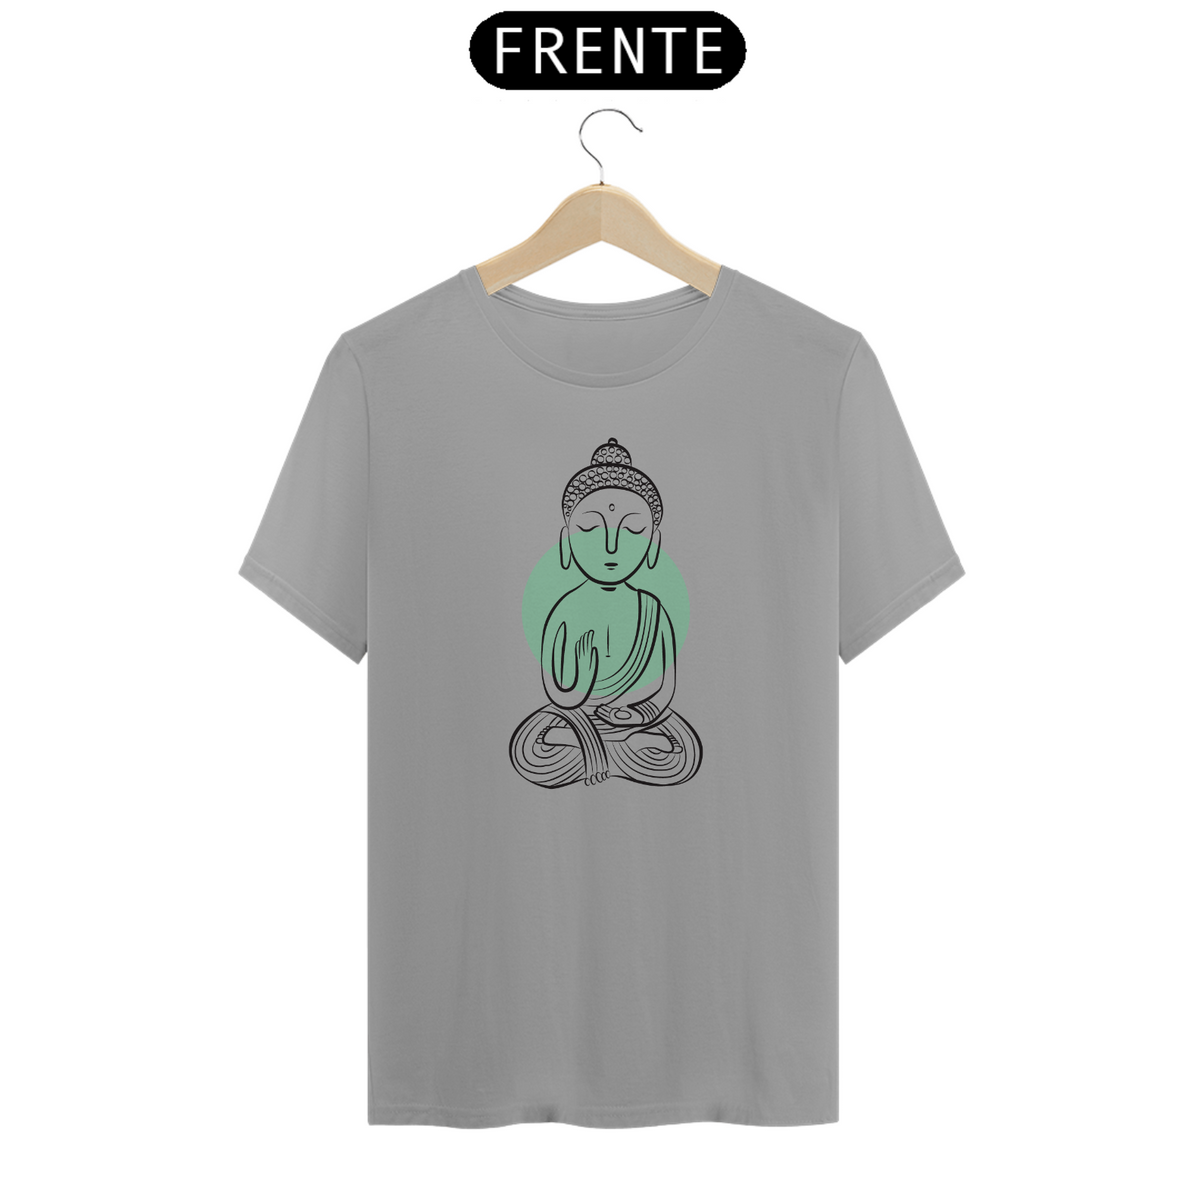 Nome do produto: Buda Verde (cores claras)